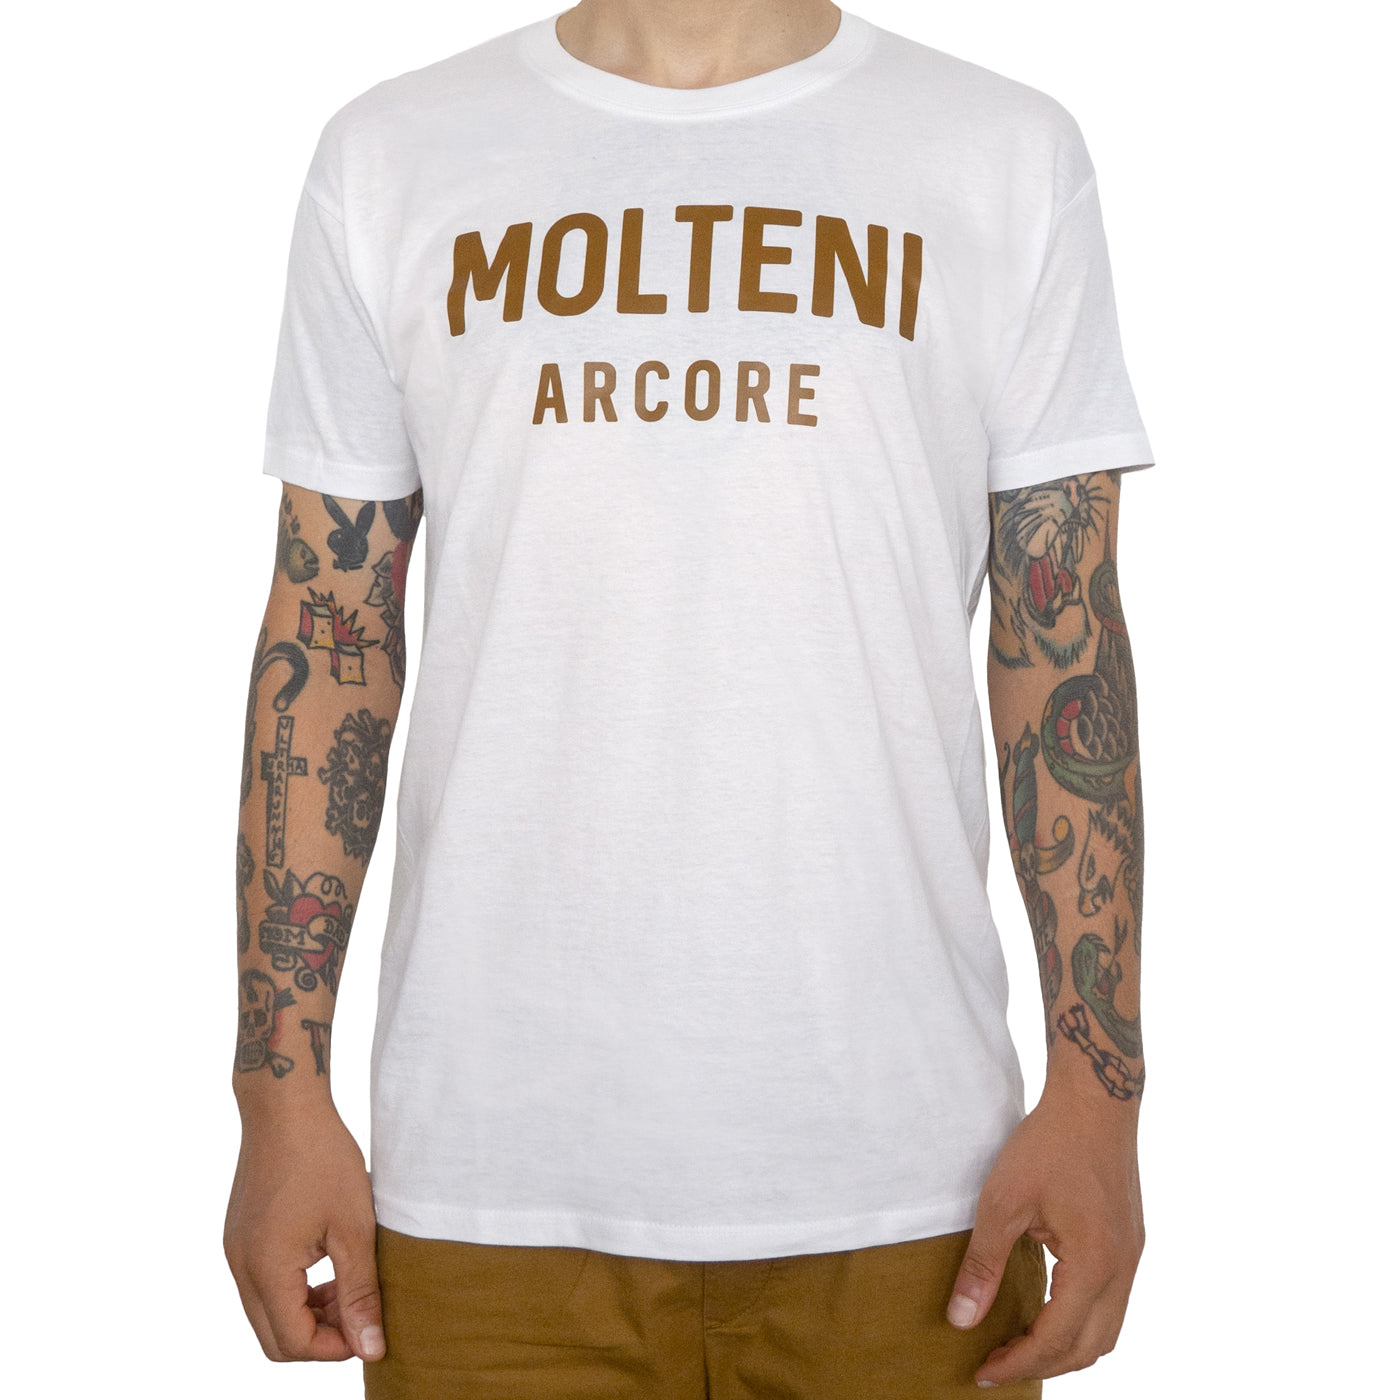 Molteni Arcore Moderna t-Shirt - Weiss